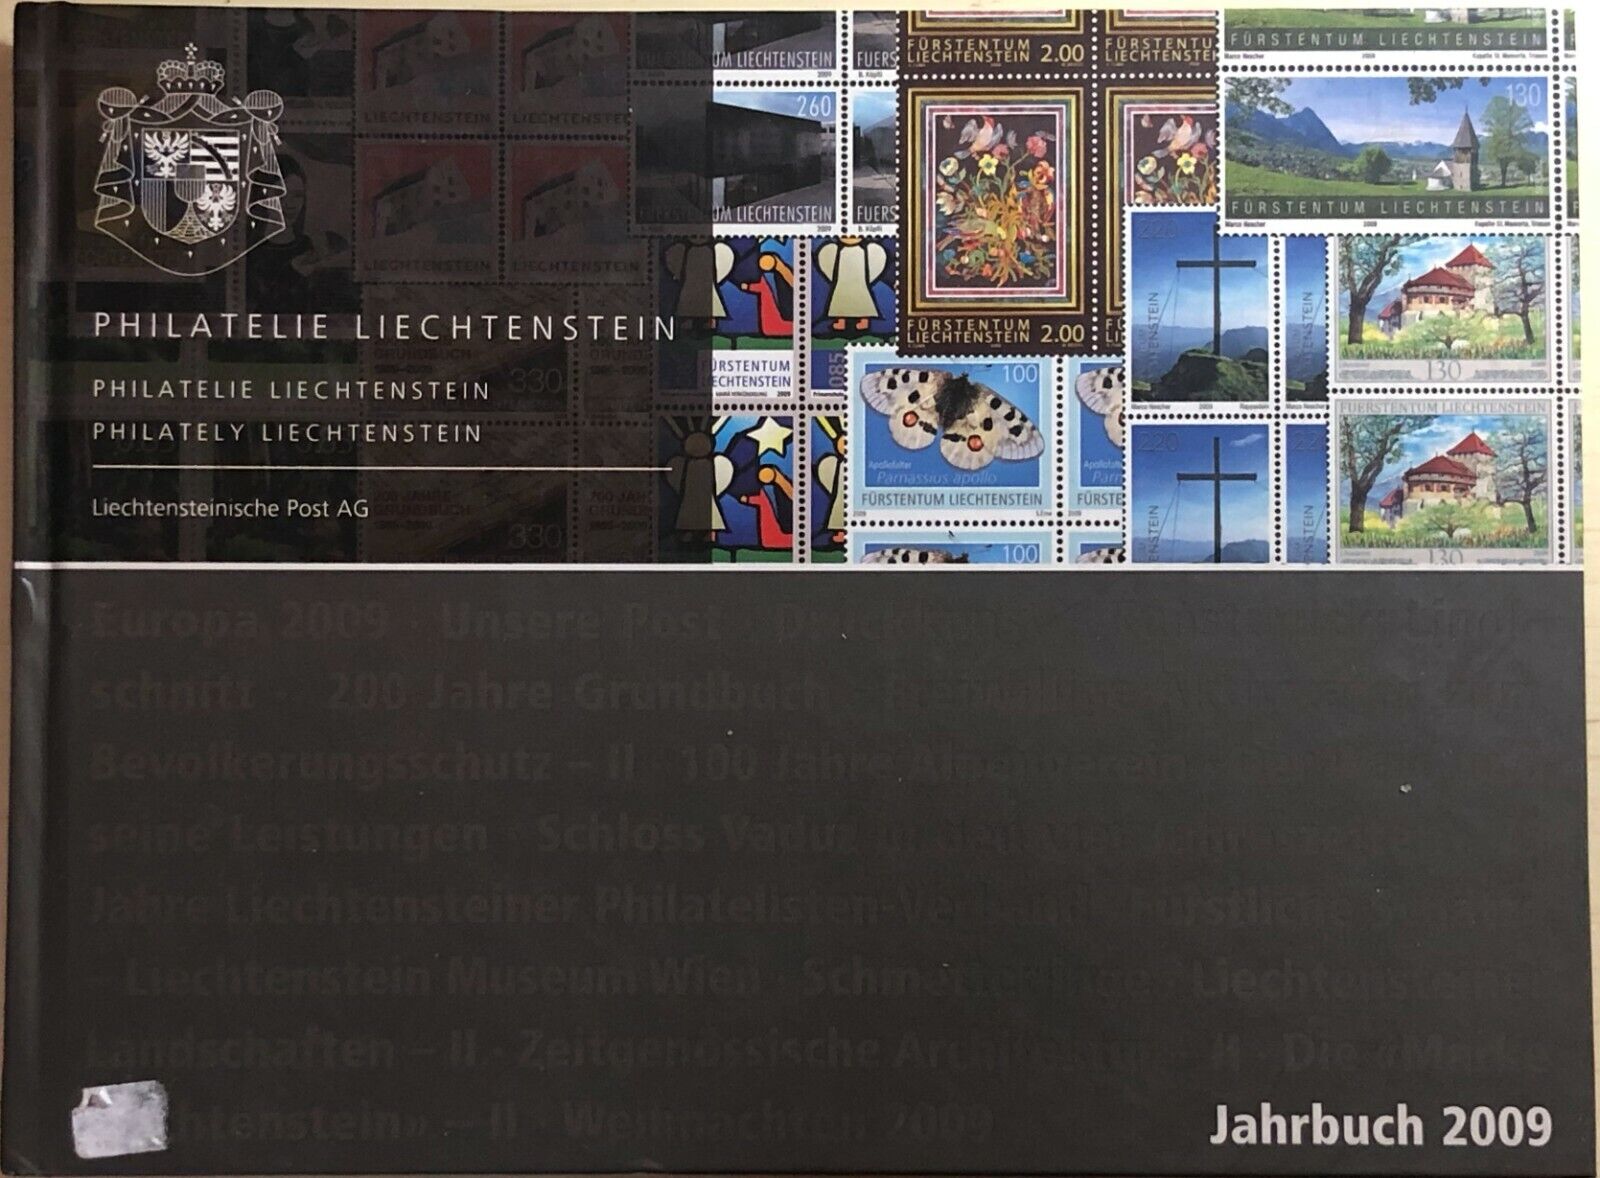 Philatelie Liechtenstein di Aa.vv., 2009, Liechtensteinische Post Ag